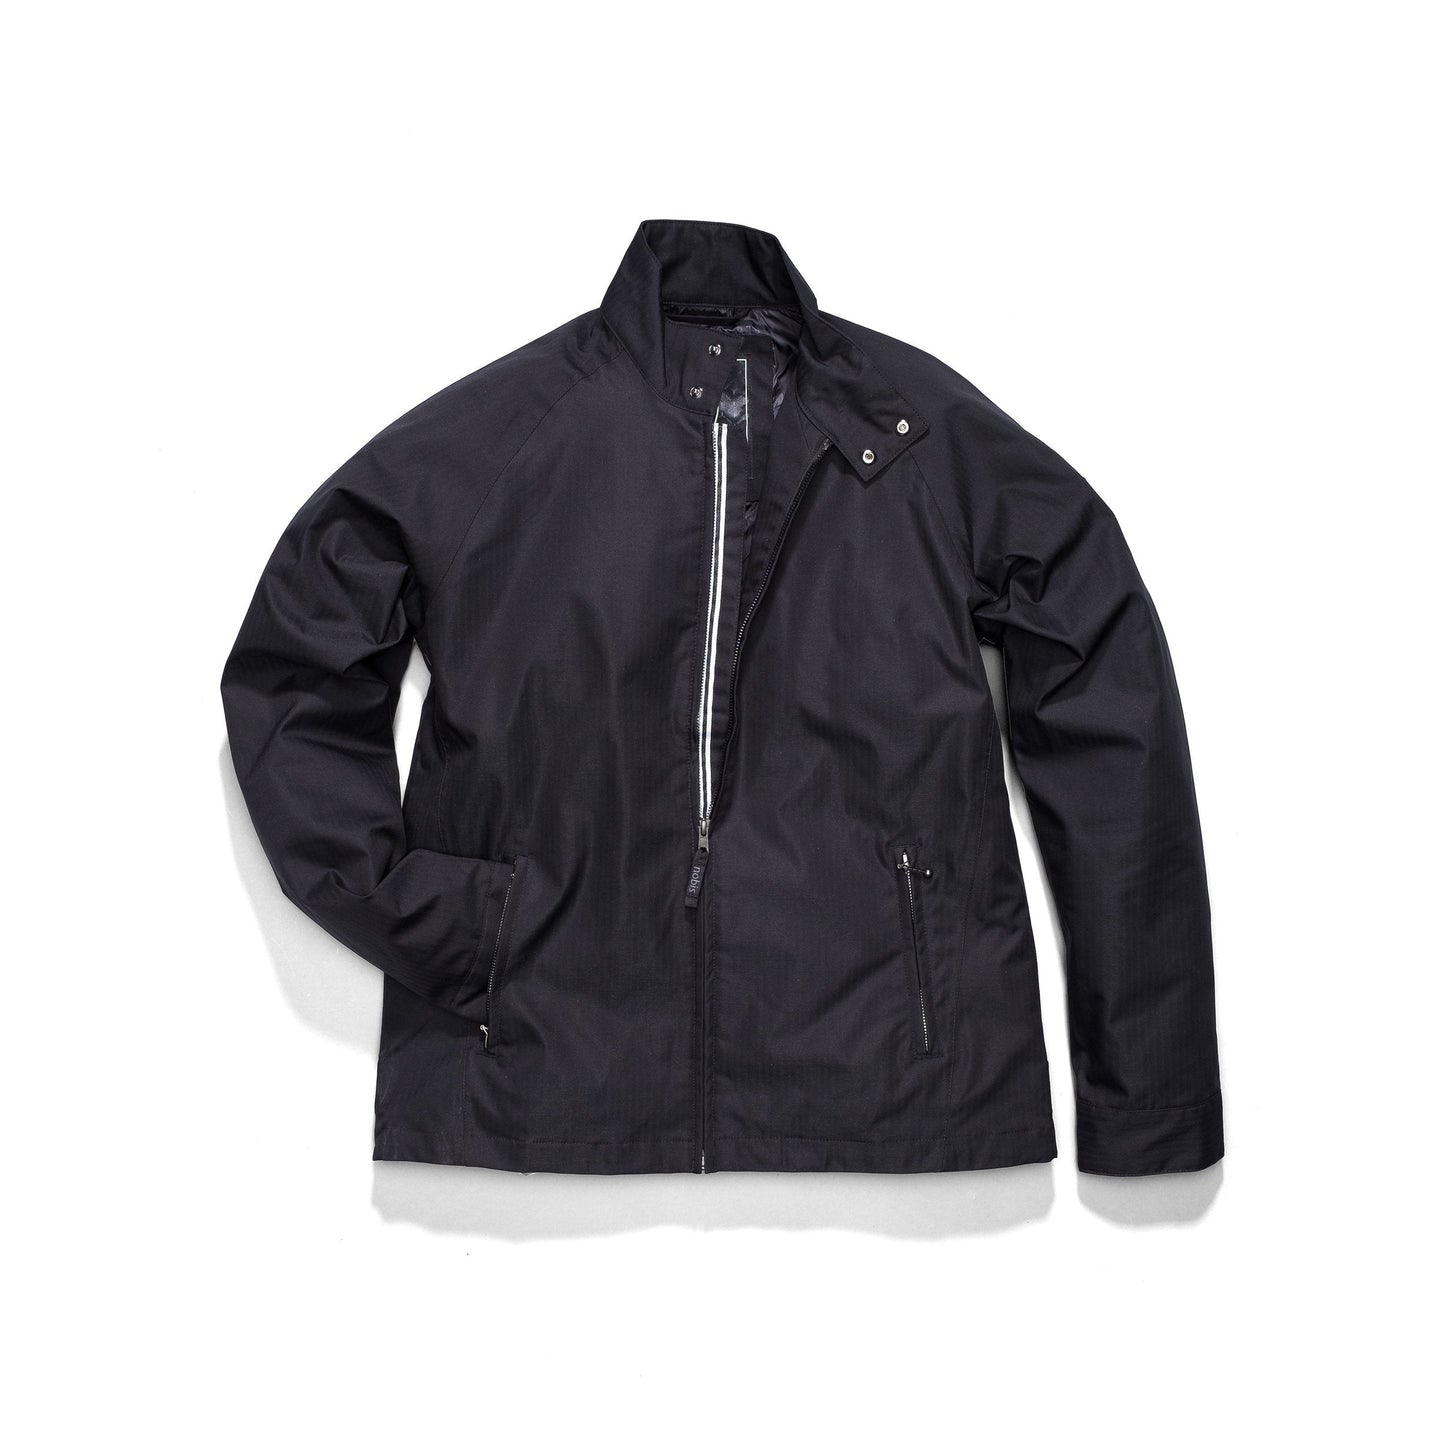 Men's zip up racer jacket in Black